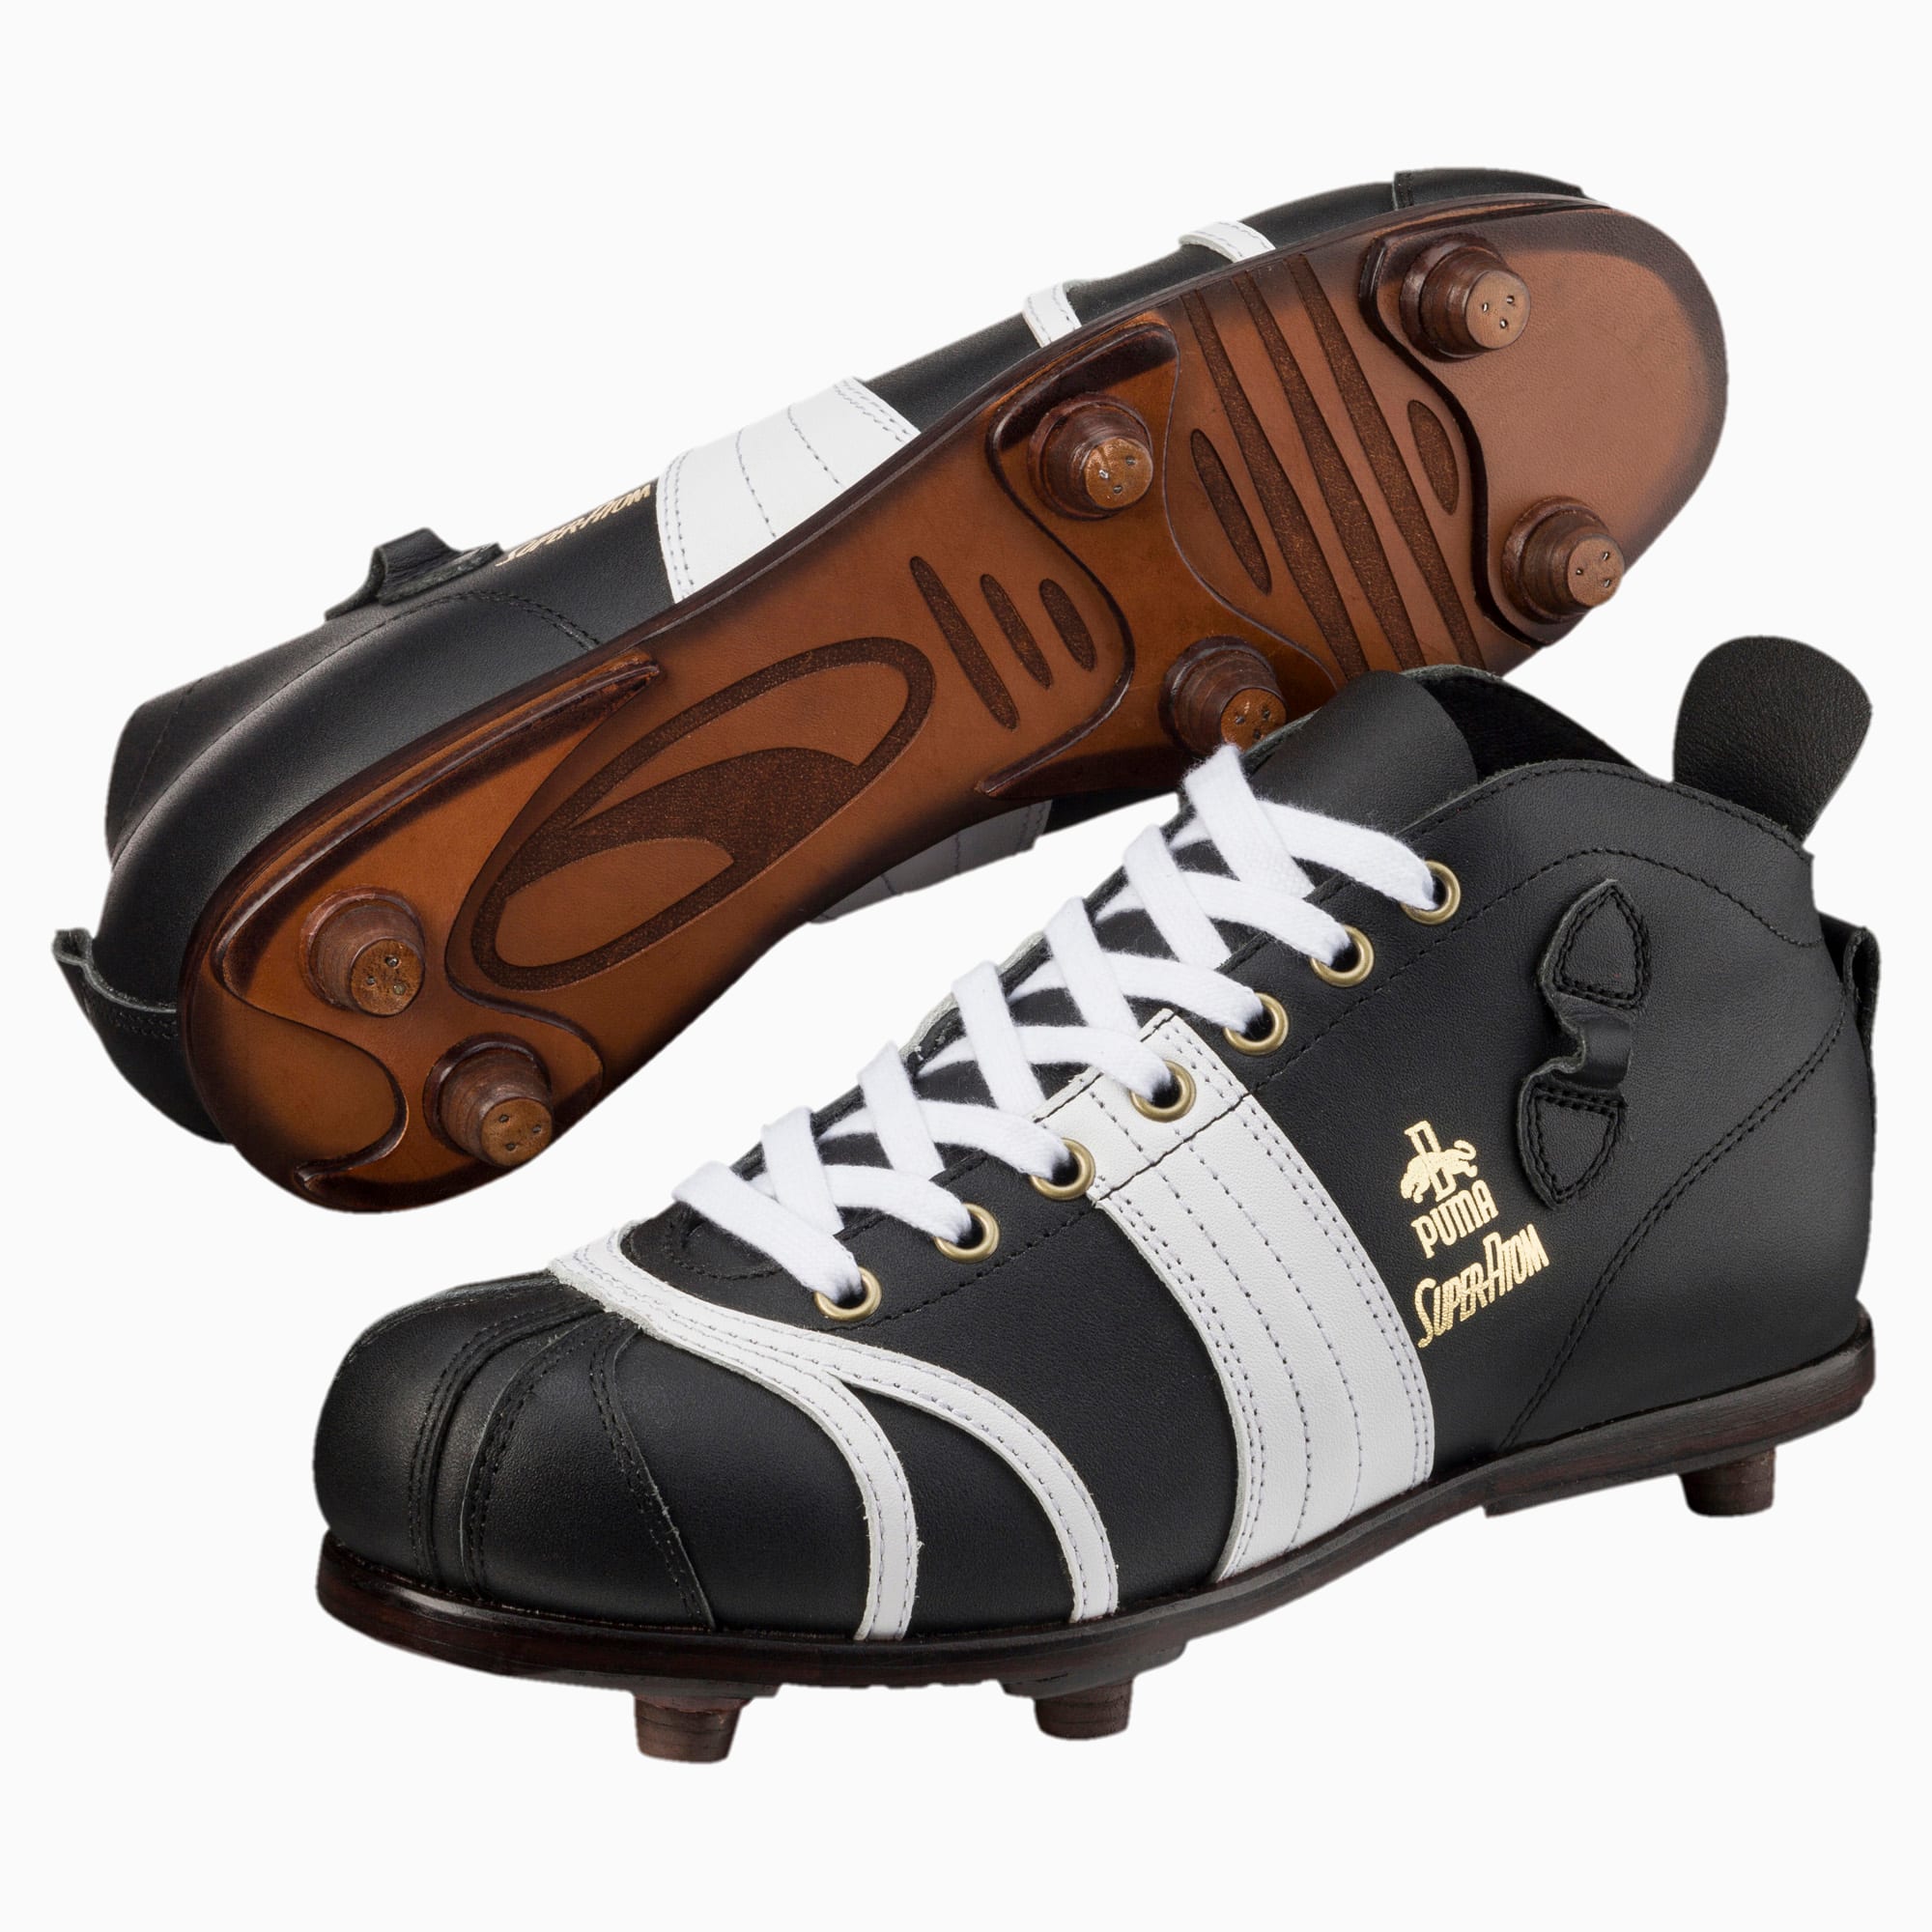 Super Atom Men's Football Boots | PUMA Shoes | PUMA España